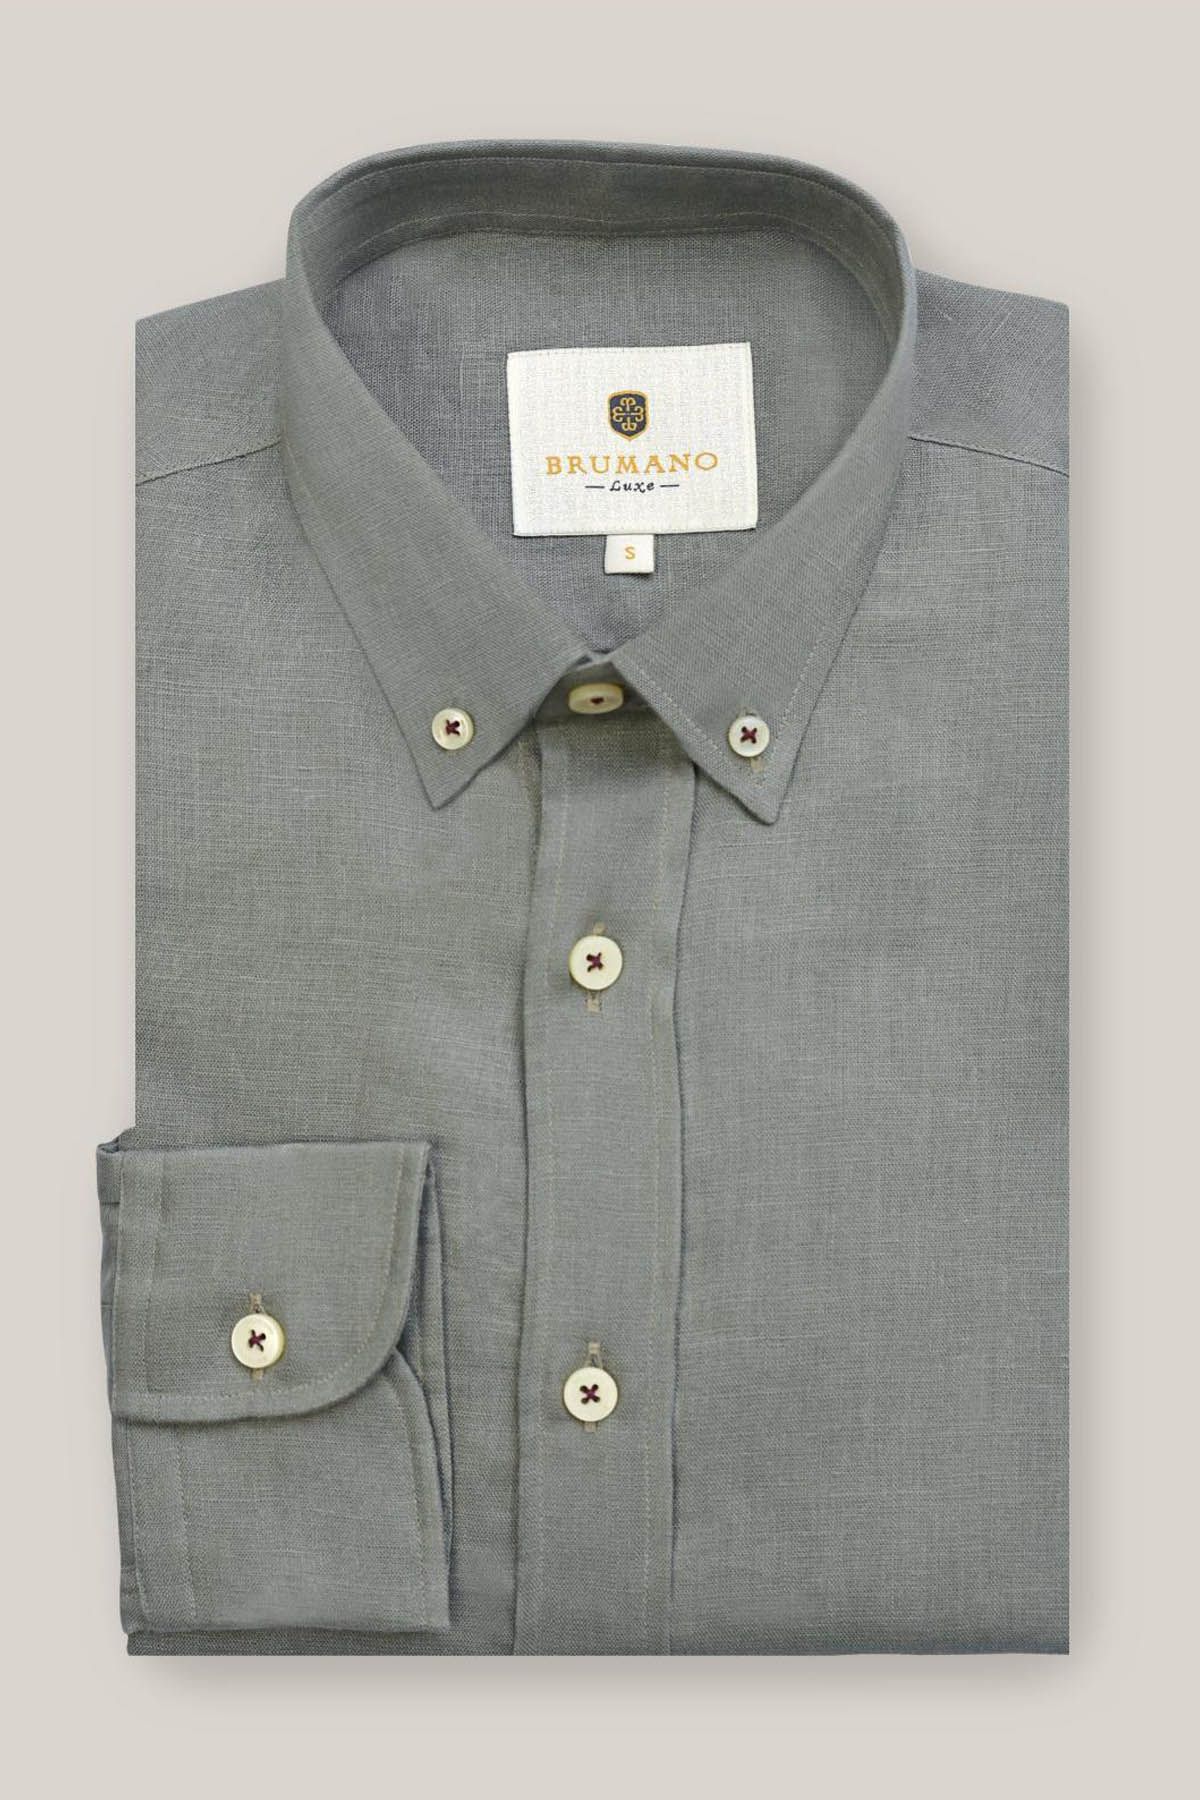 Olive Green Button Down 100% Linen Shirt